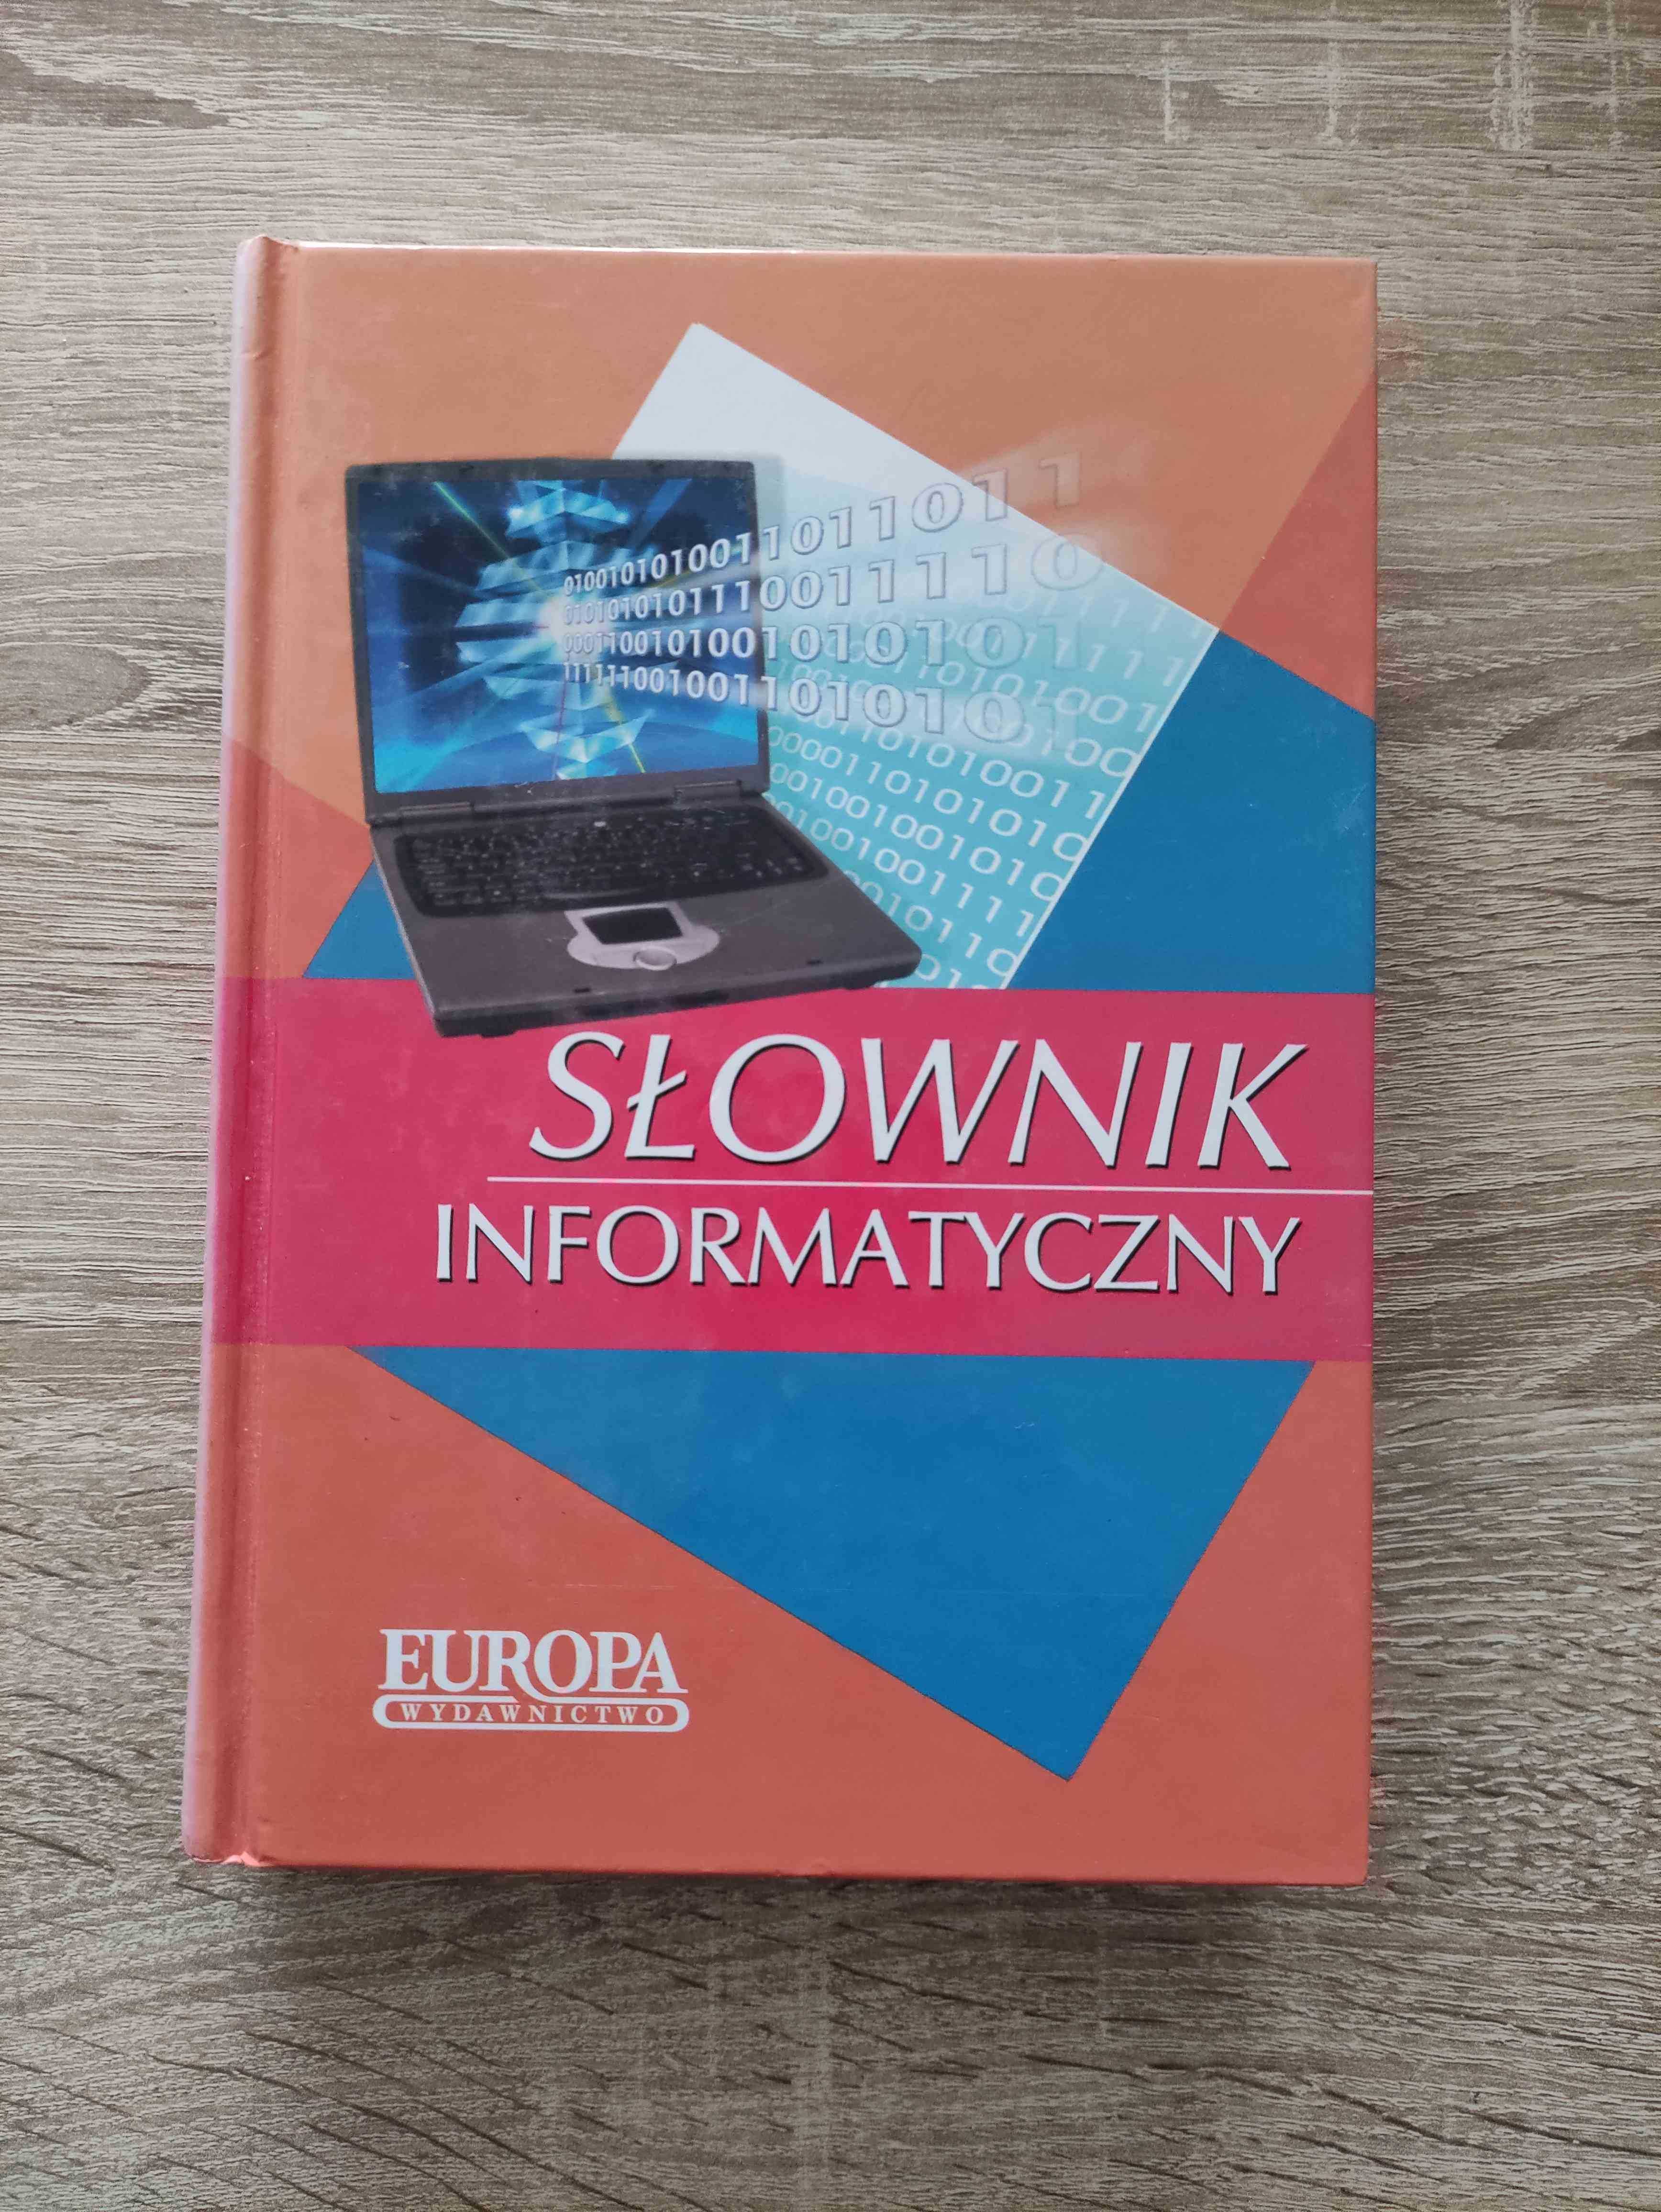 Słownik Informatyczny wyd. Europa Rzeszów